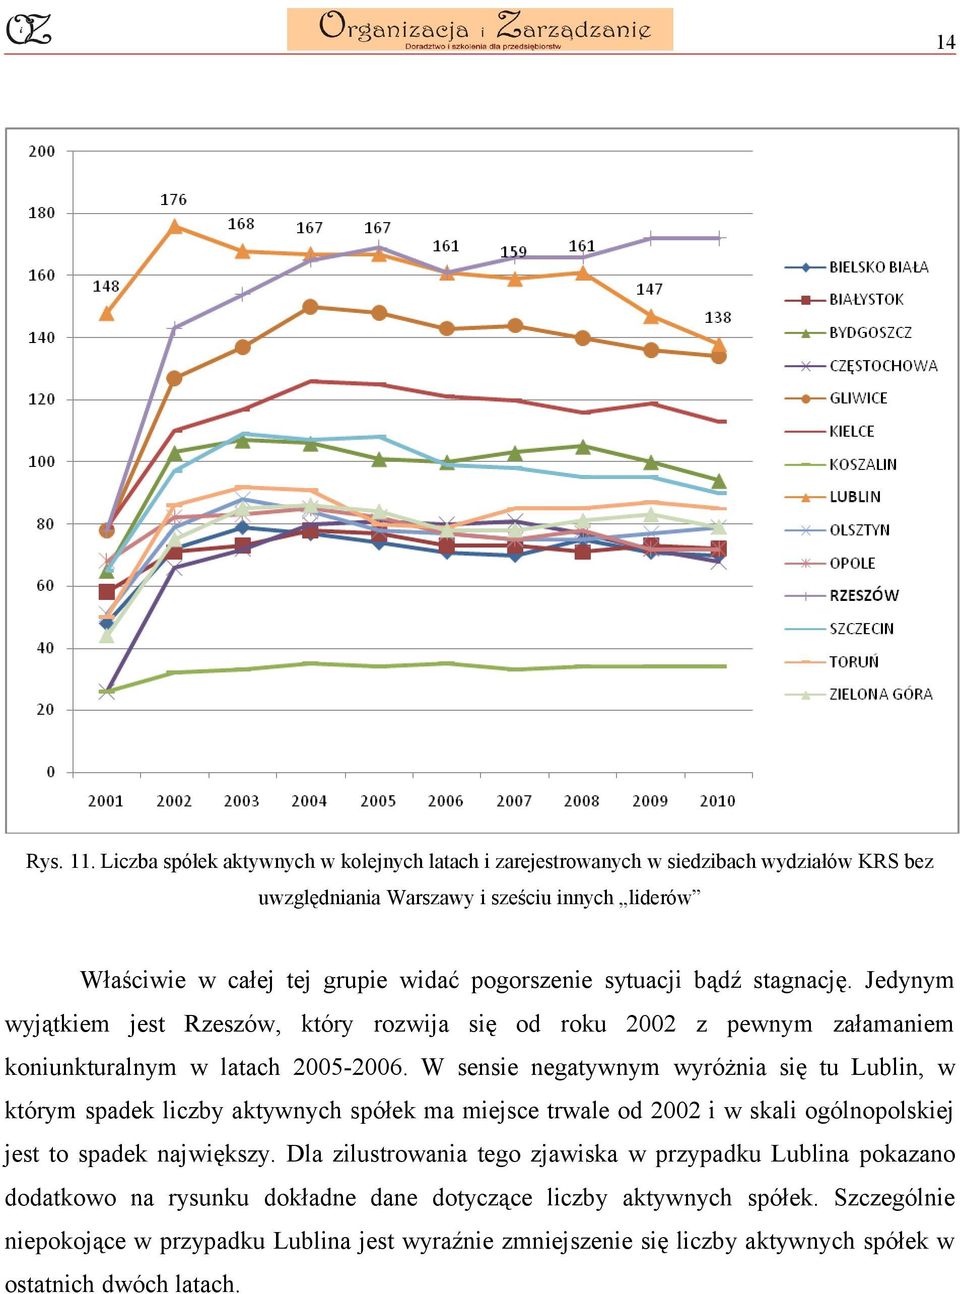 sytuacji bądź stagnację. Jedynym wyjątkiem jest Rzeszów, który rozwija się od roku 2002 z pewnym załamaniem koniunkturalnym w latach 2005-2006.